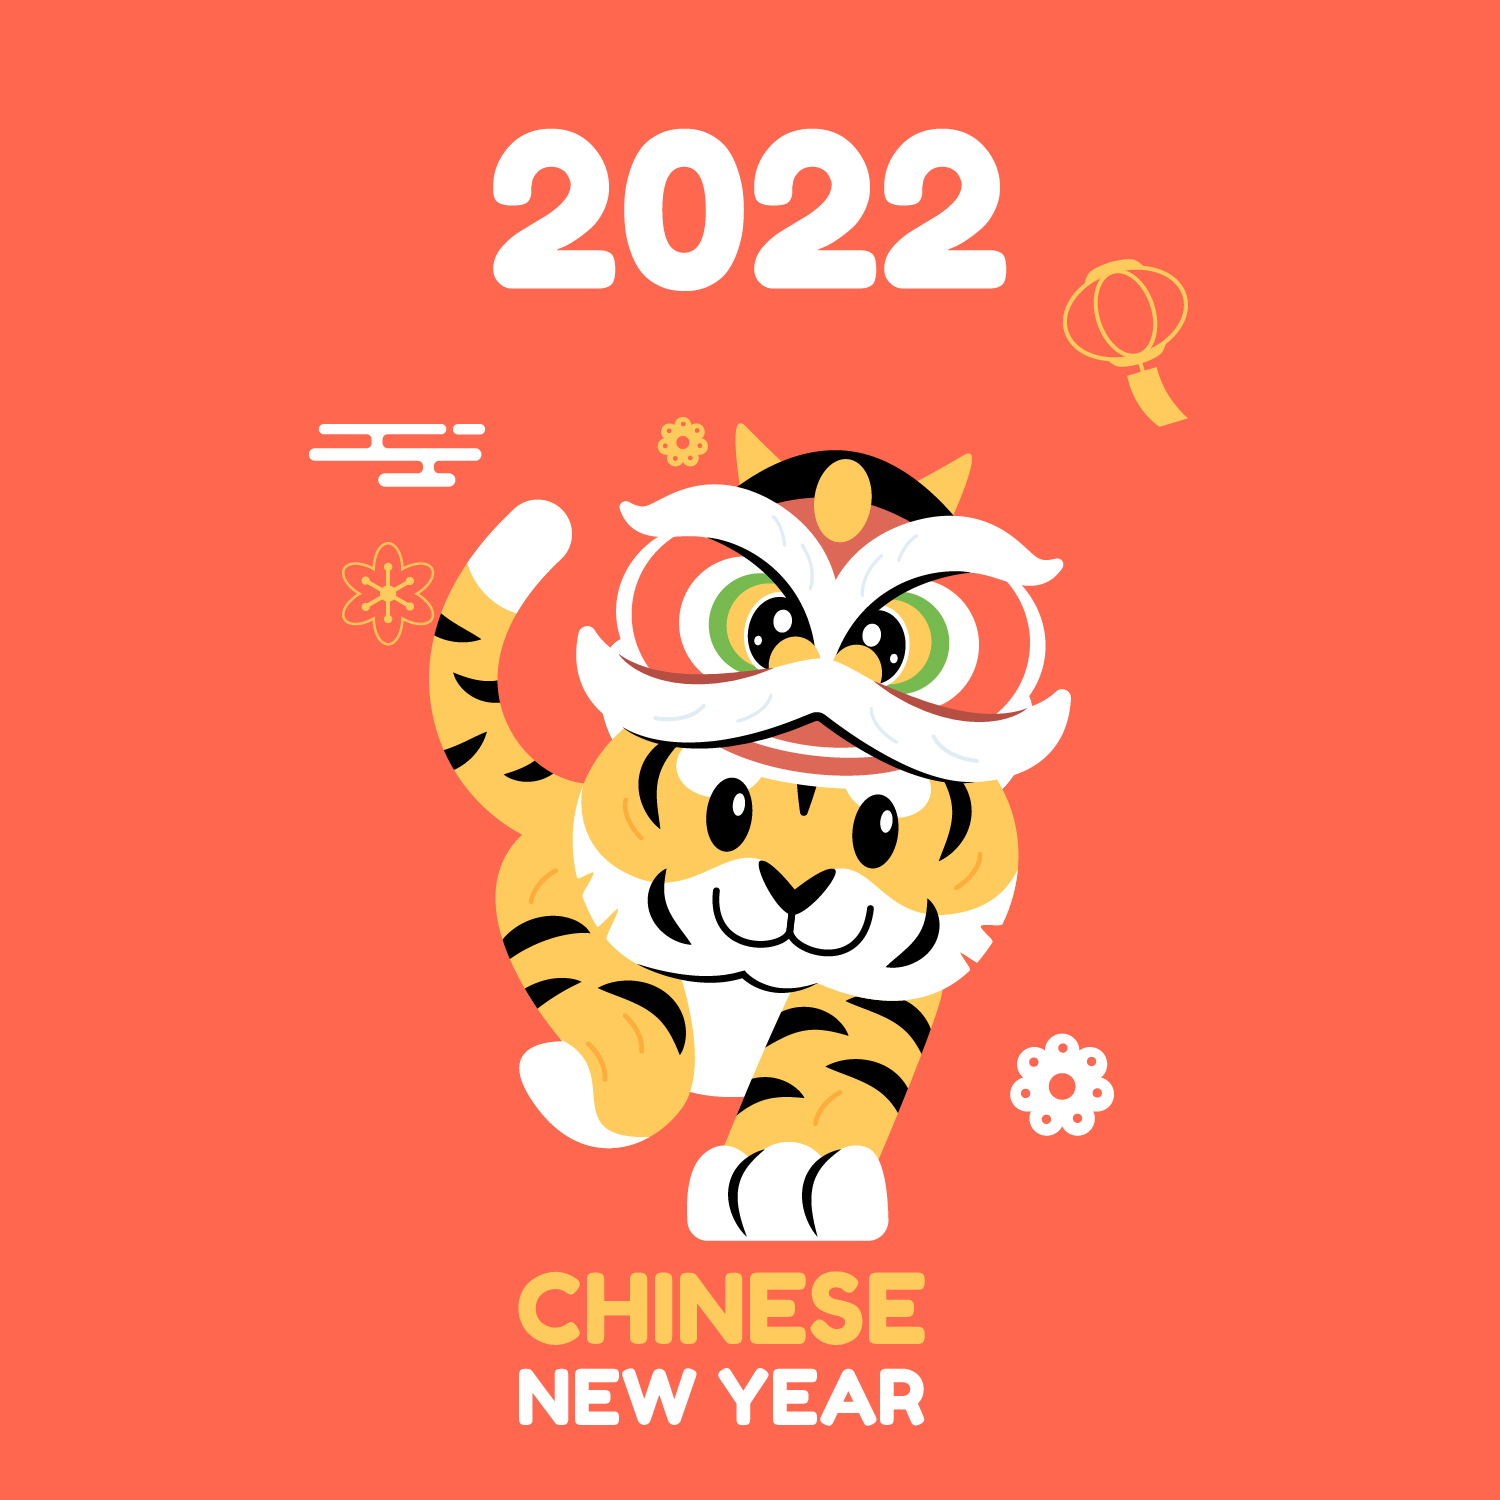 Gambar Ucapan Selamat Tahun Baru Imlek 2022